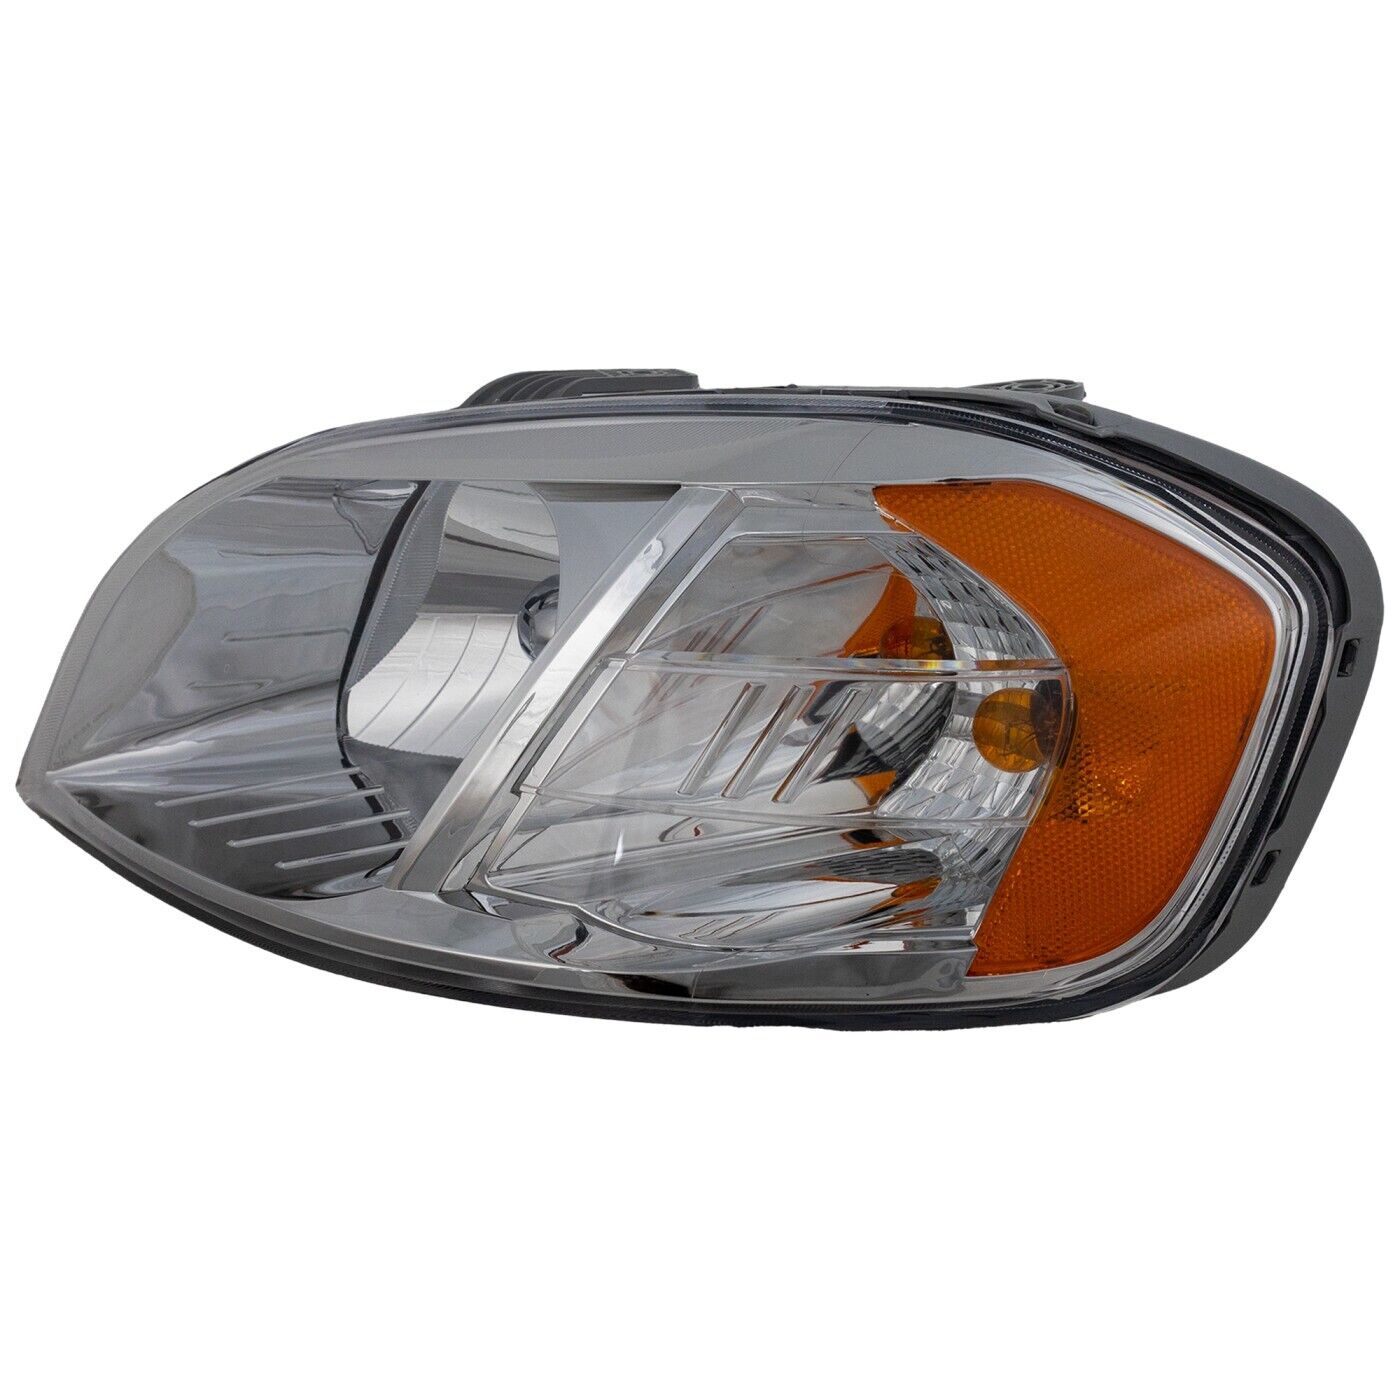 Headlight For 2007 2008 2009 2010 2011 Chevrolet Aveo Sedan Left With Bulb